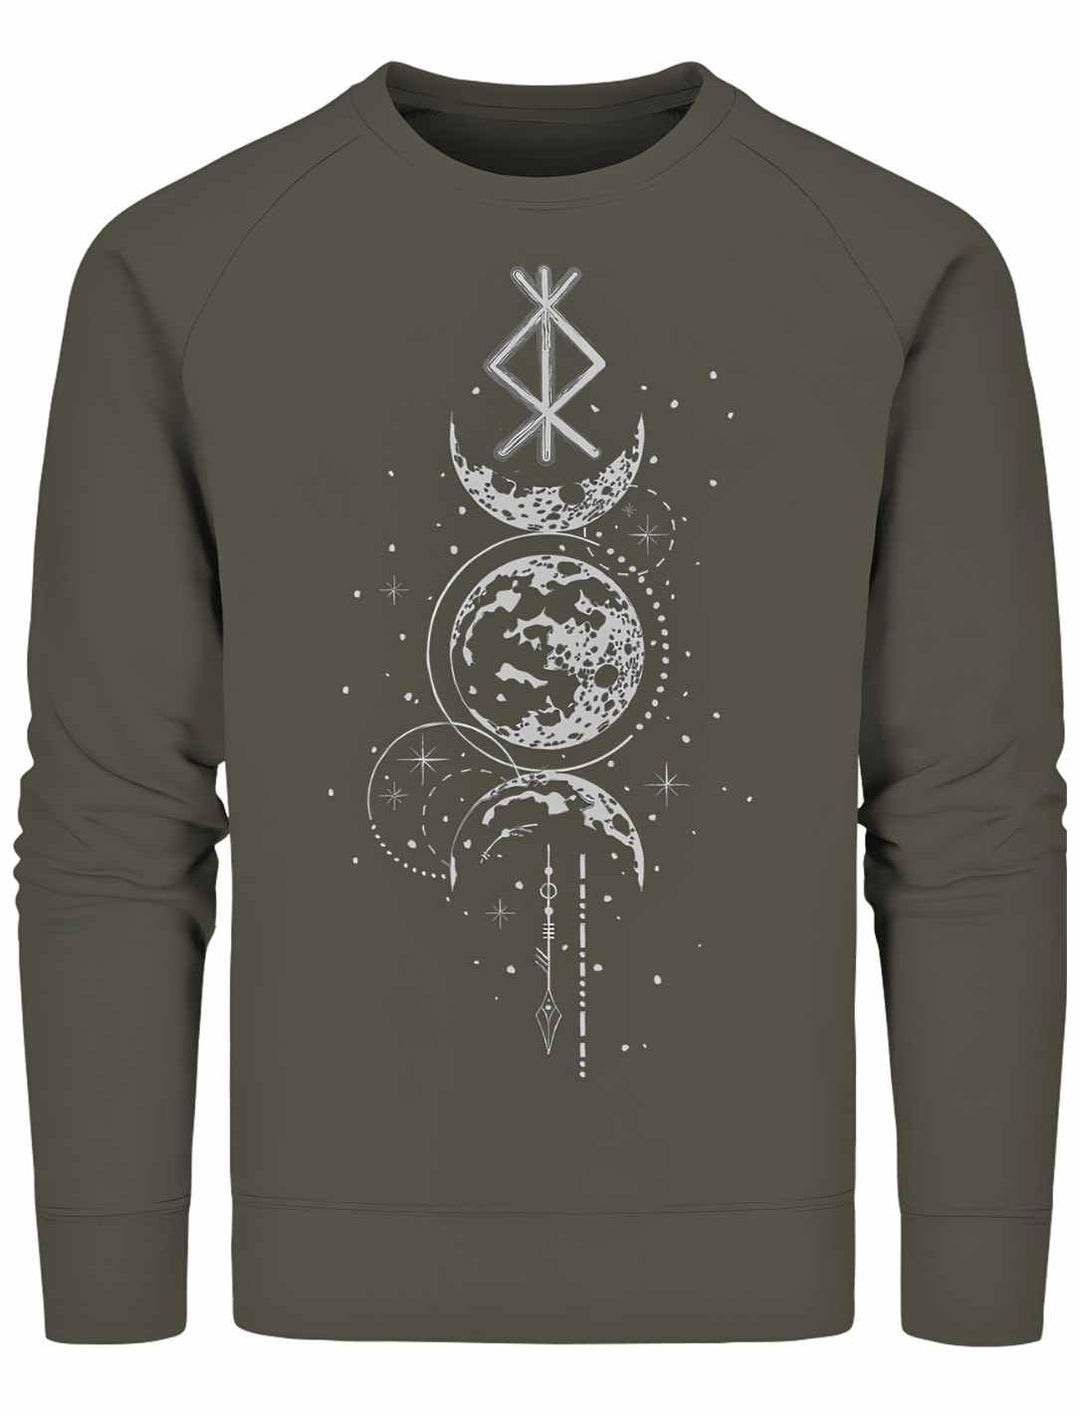 Sweat Shirt - Rune des Mondschein Wächters, nordisches Design in khaki. Von Runental.de